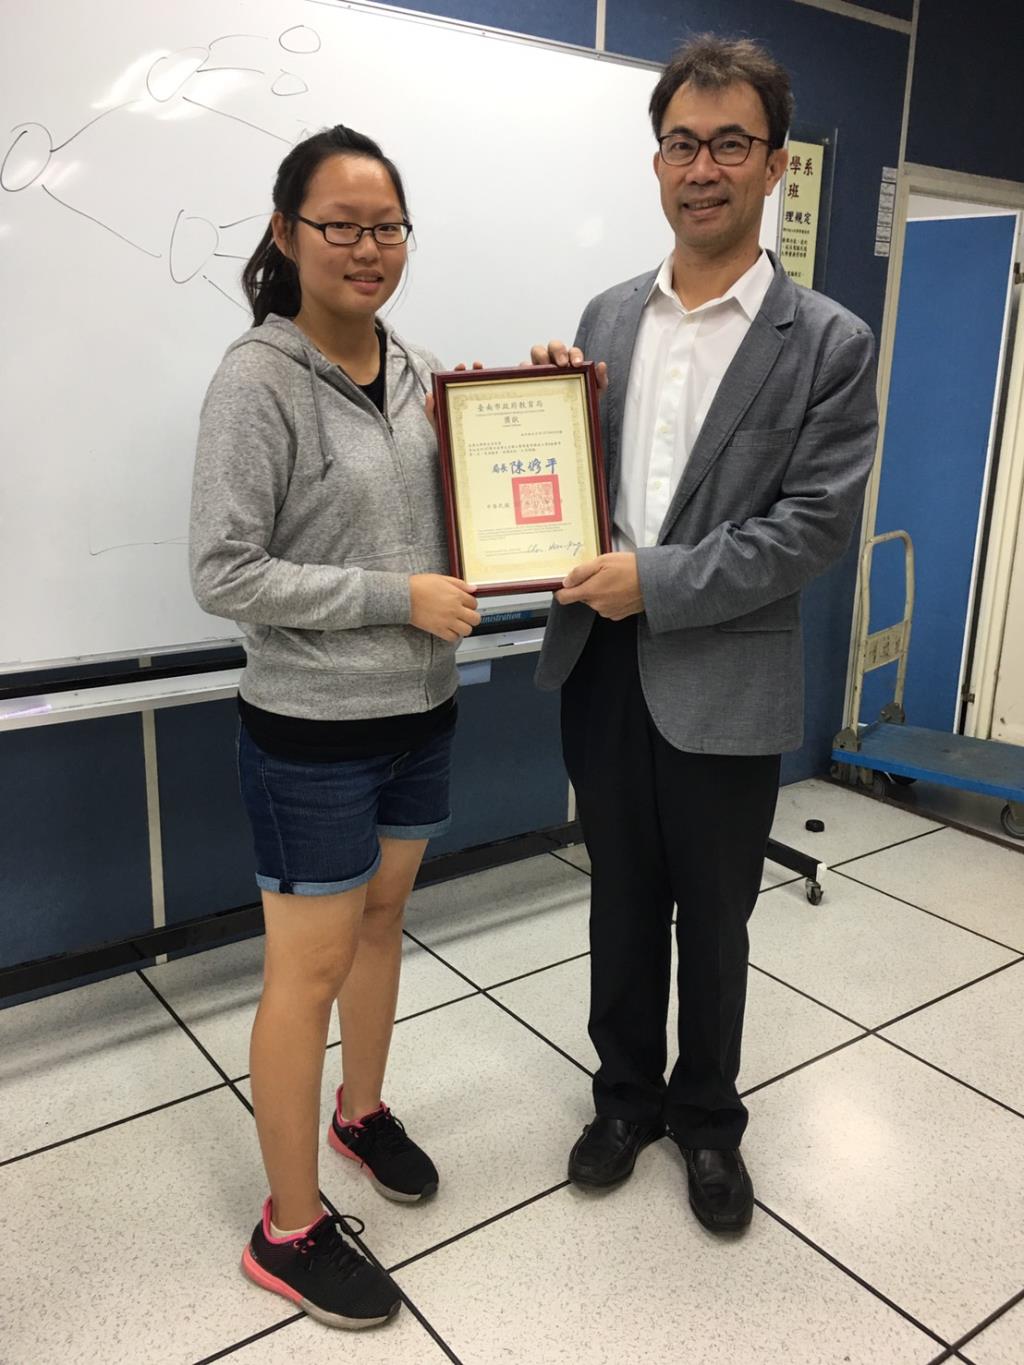 本系學子榮獲台南市政府舉辦的107學年度學生音樂比賽箏獨奏大專B組優等第一名